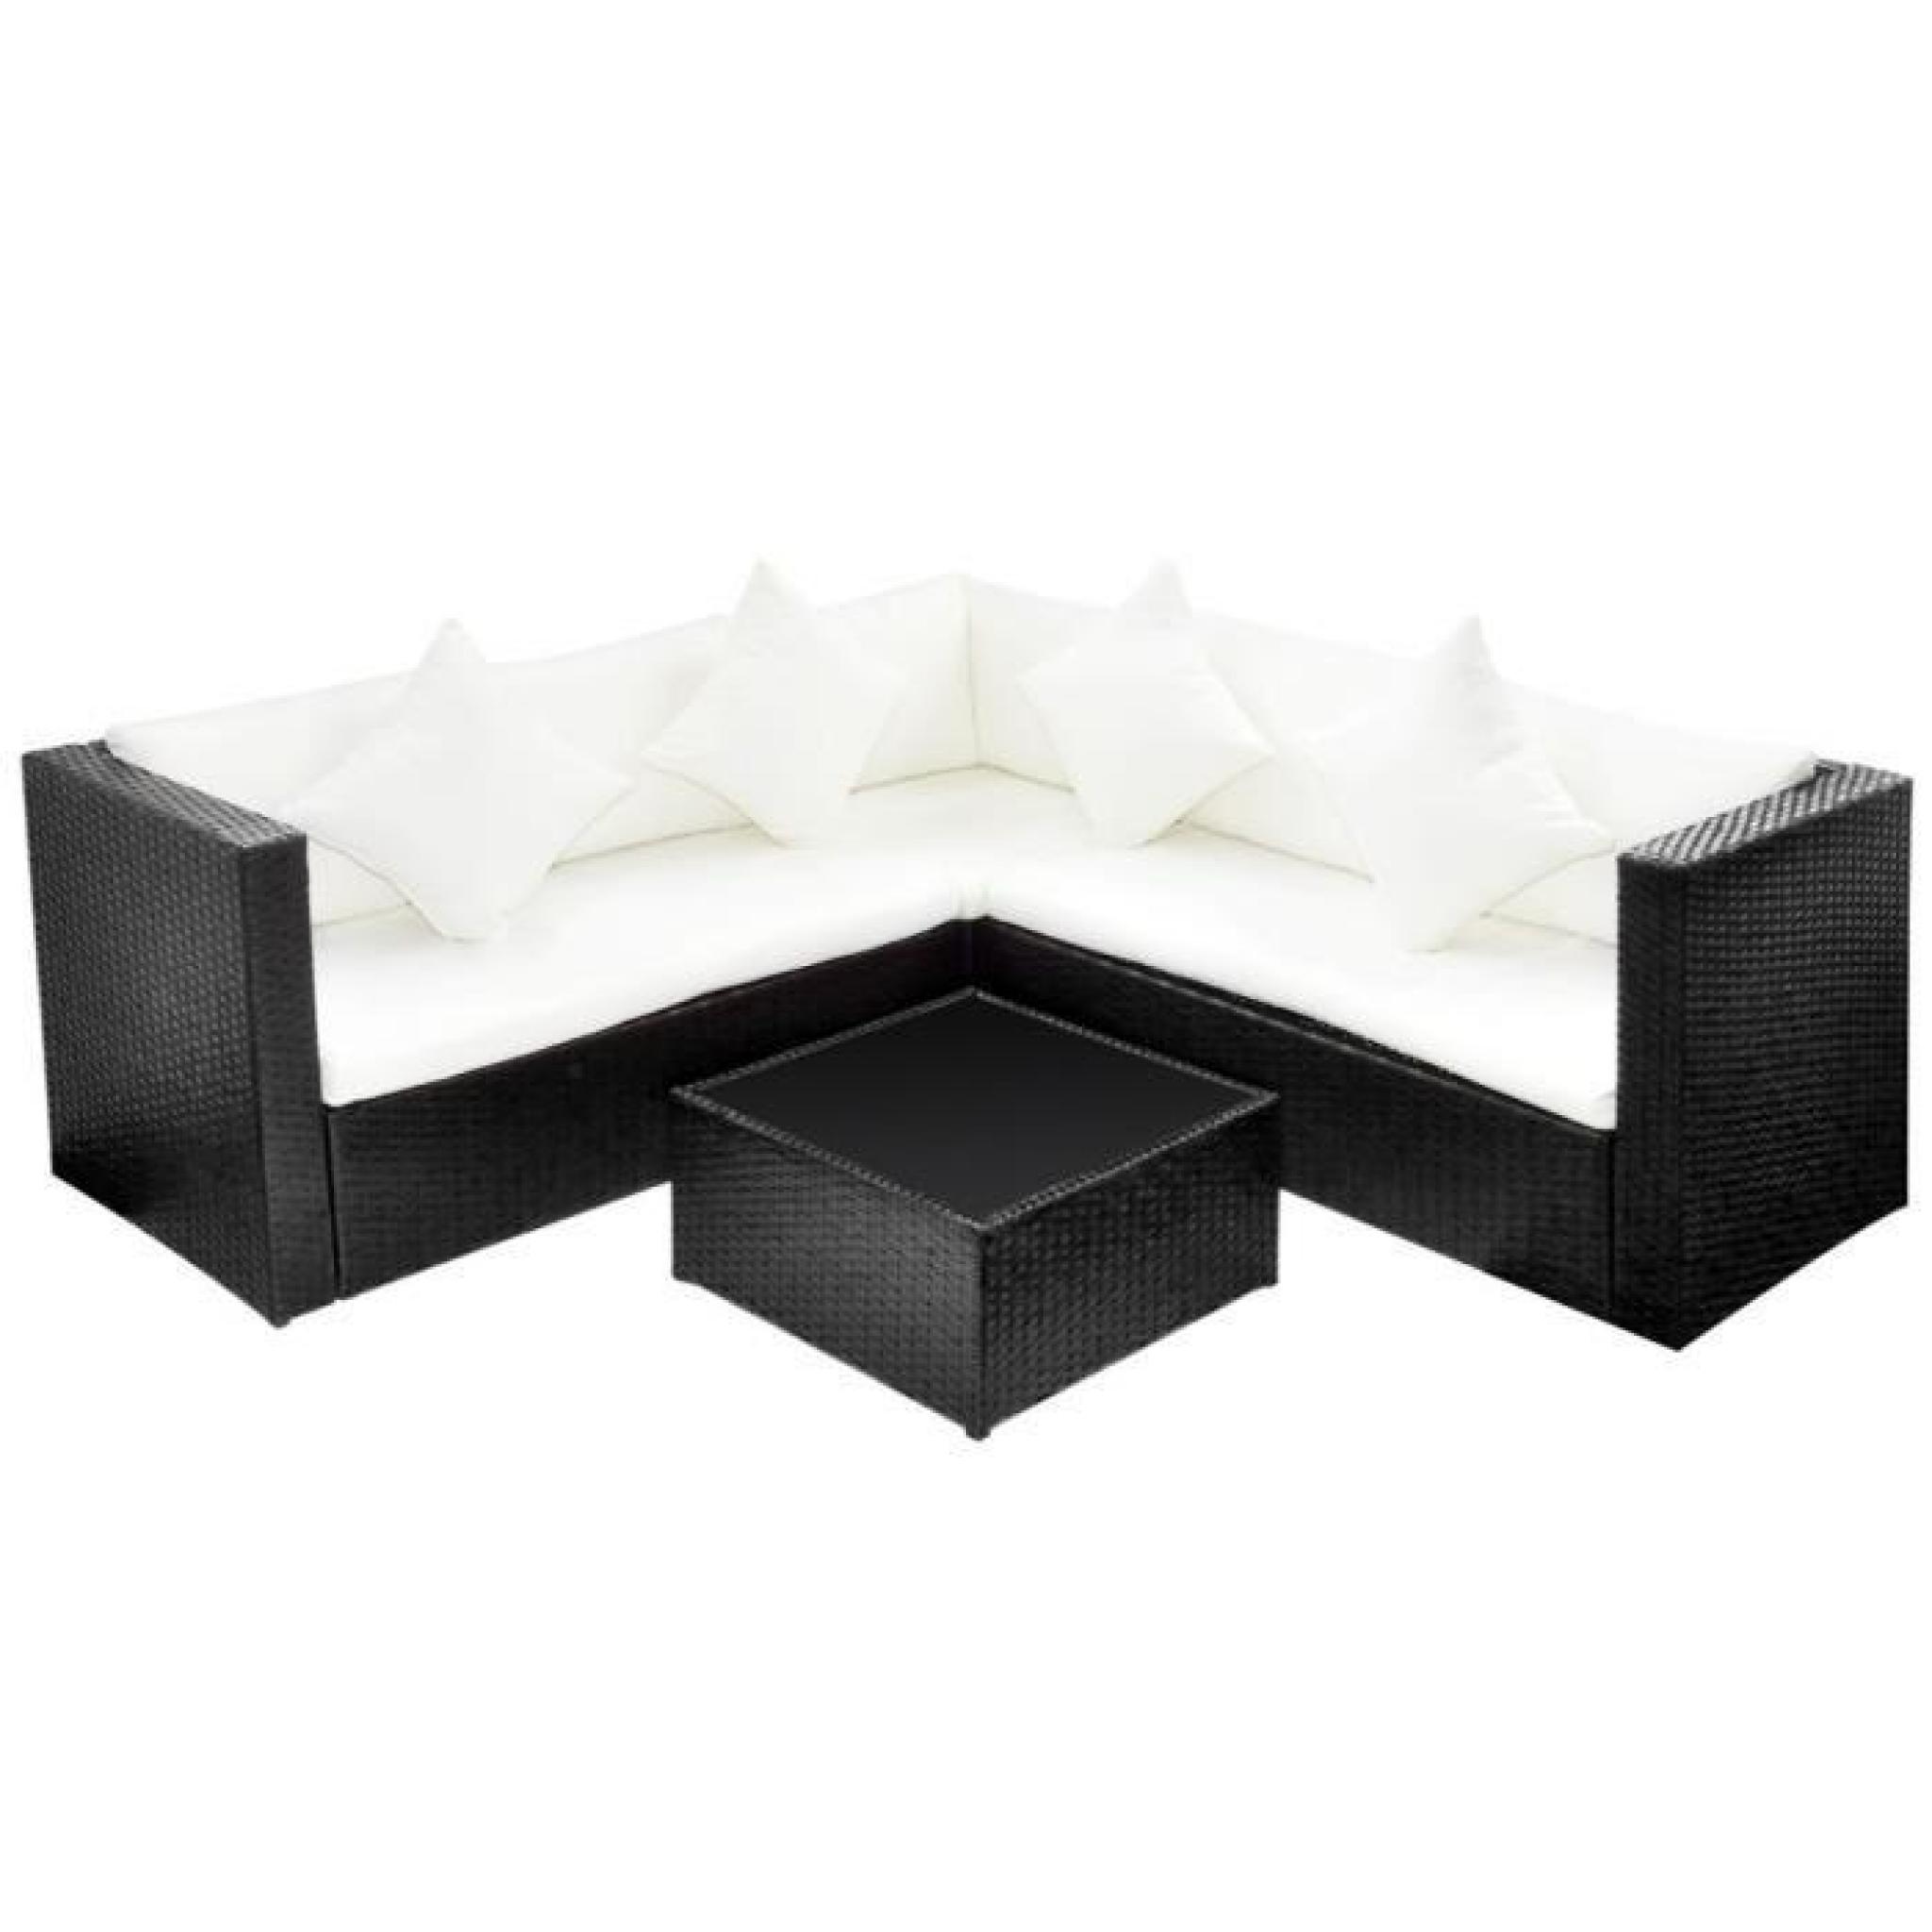 Ensembles de meubles d'exterieur Salon de jardin avec canape 2 places en polyrotin noir